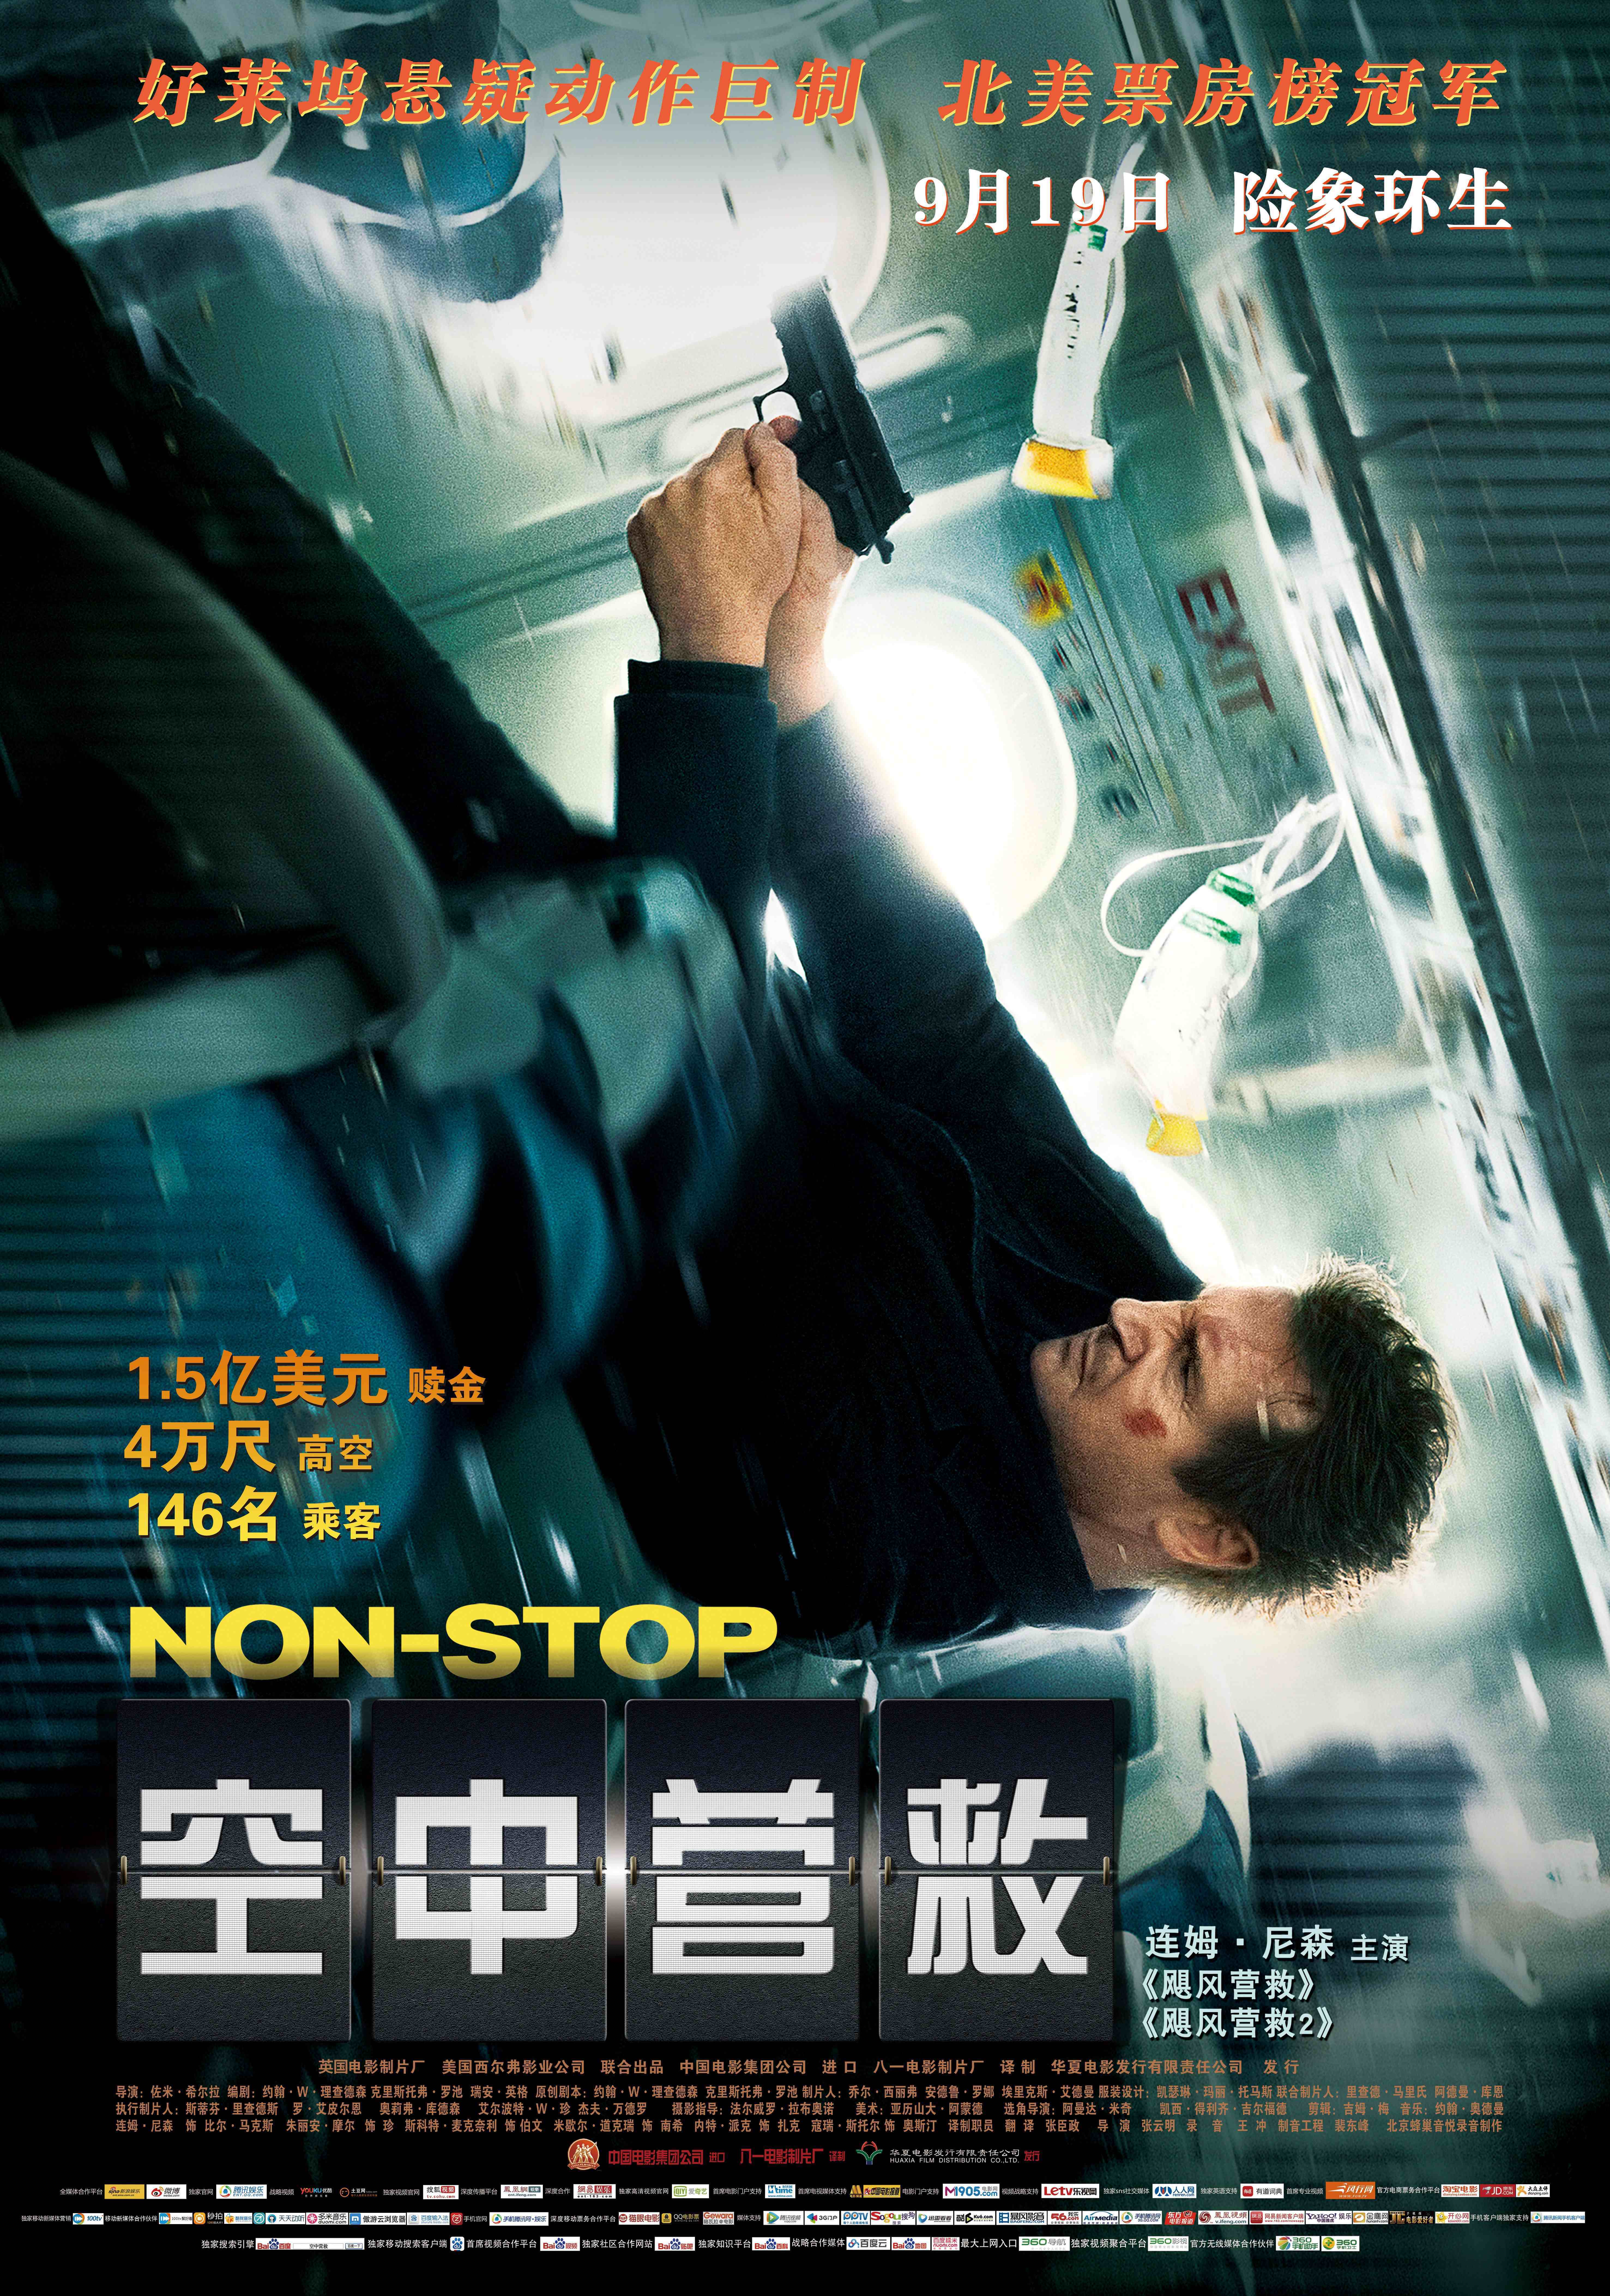 除了《中国机长》，我帮你挑出了20部同样惊险的高分空难电影